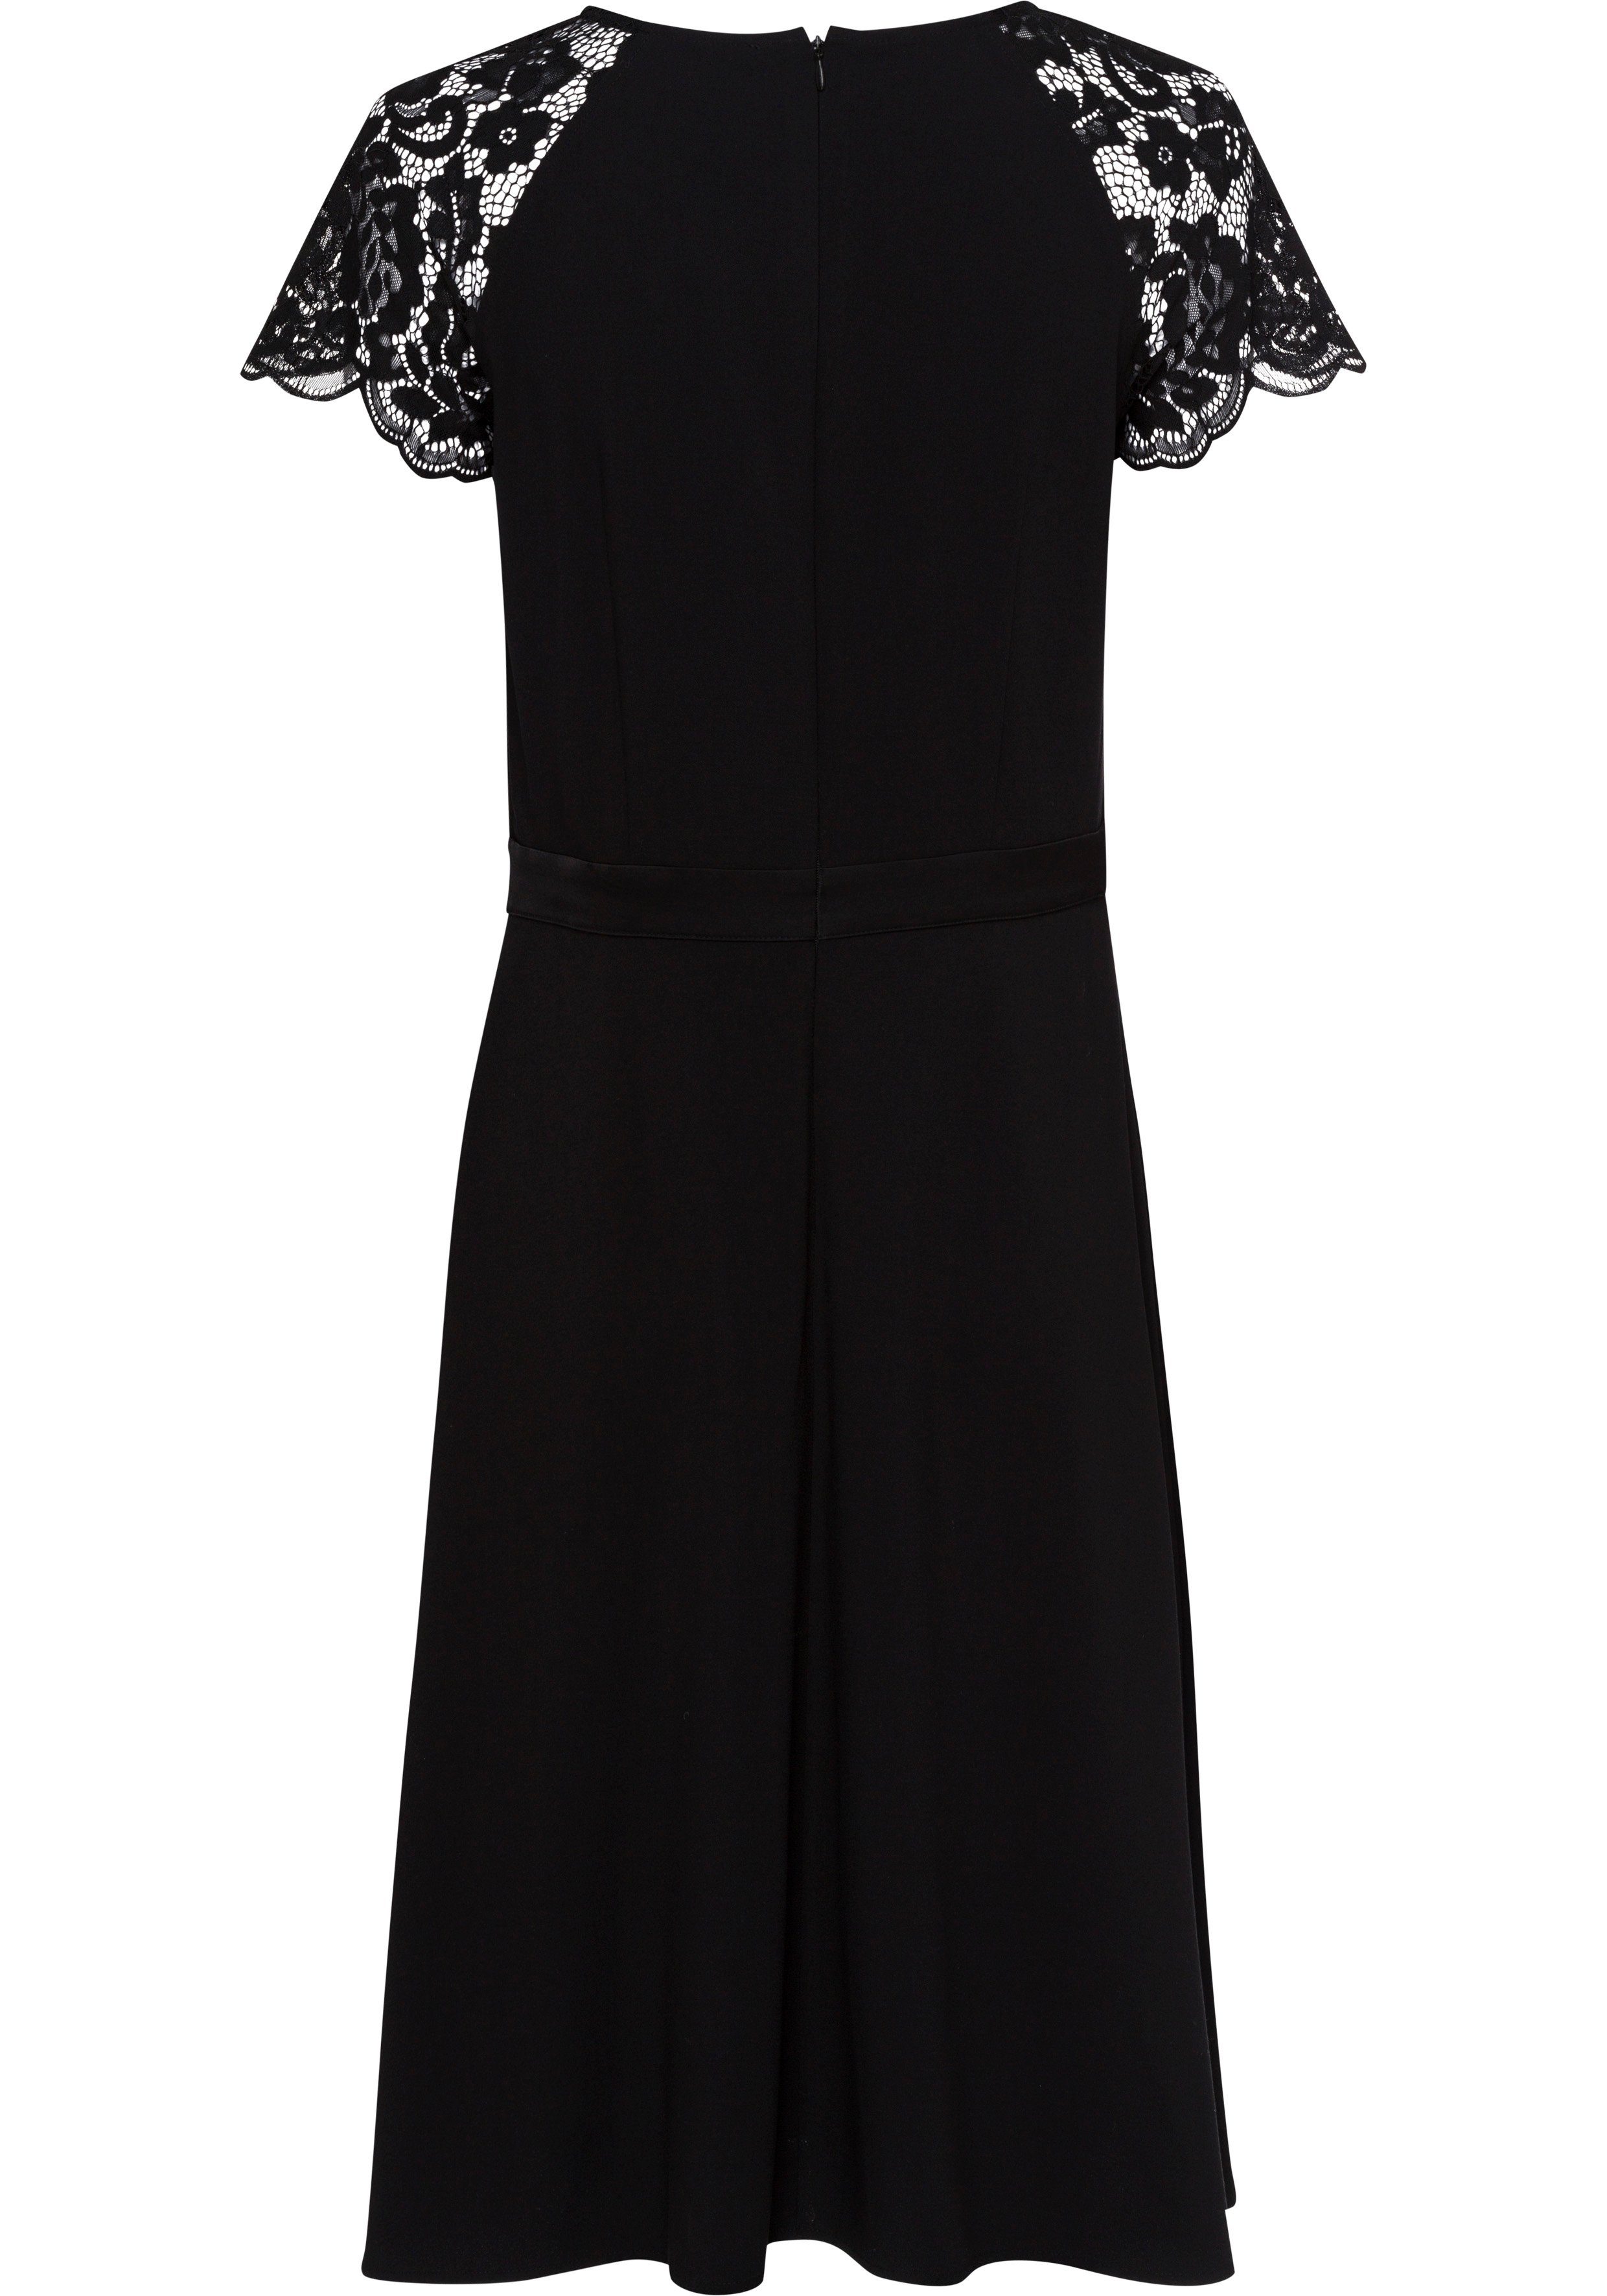 Esprit Collection A-Linien-Kleid mit Spitze an den Ärmeln online kaufen |  OTTO